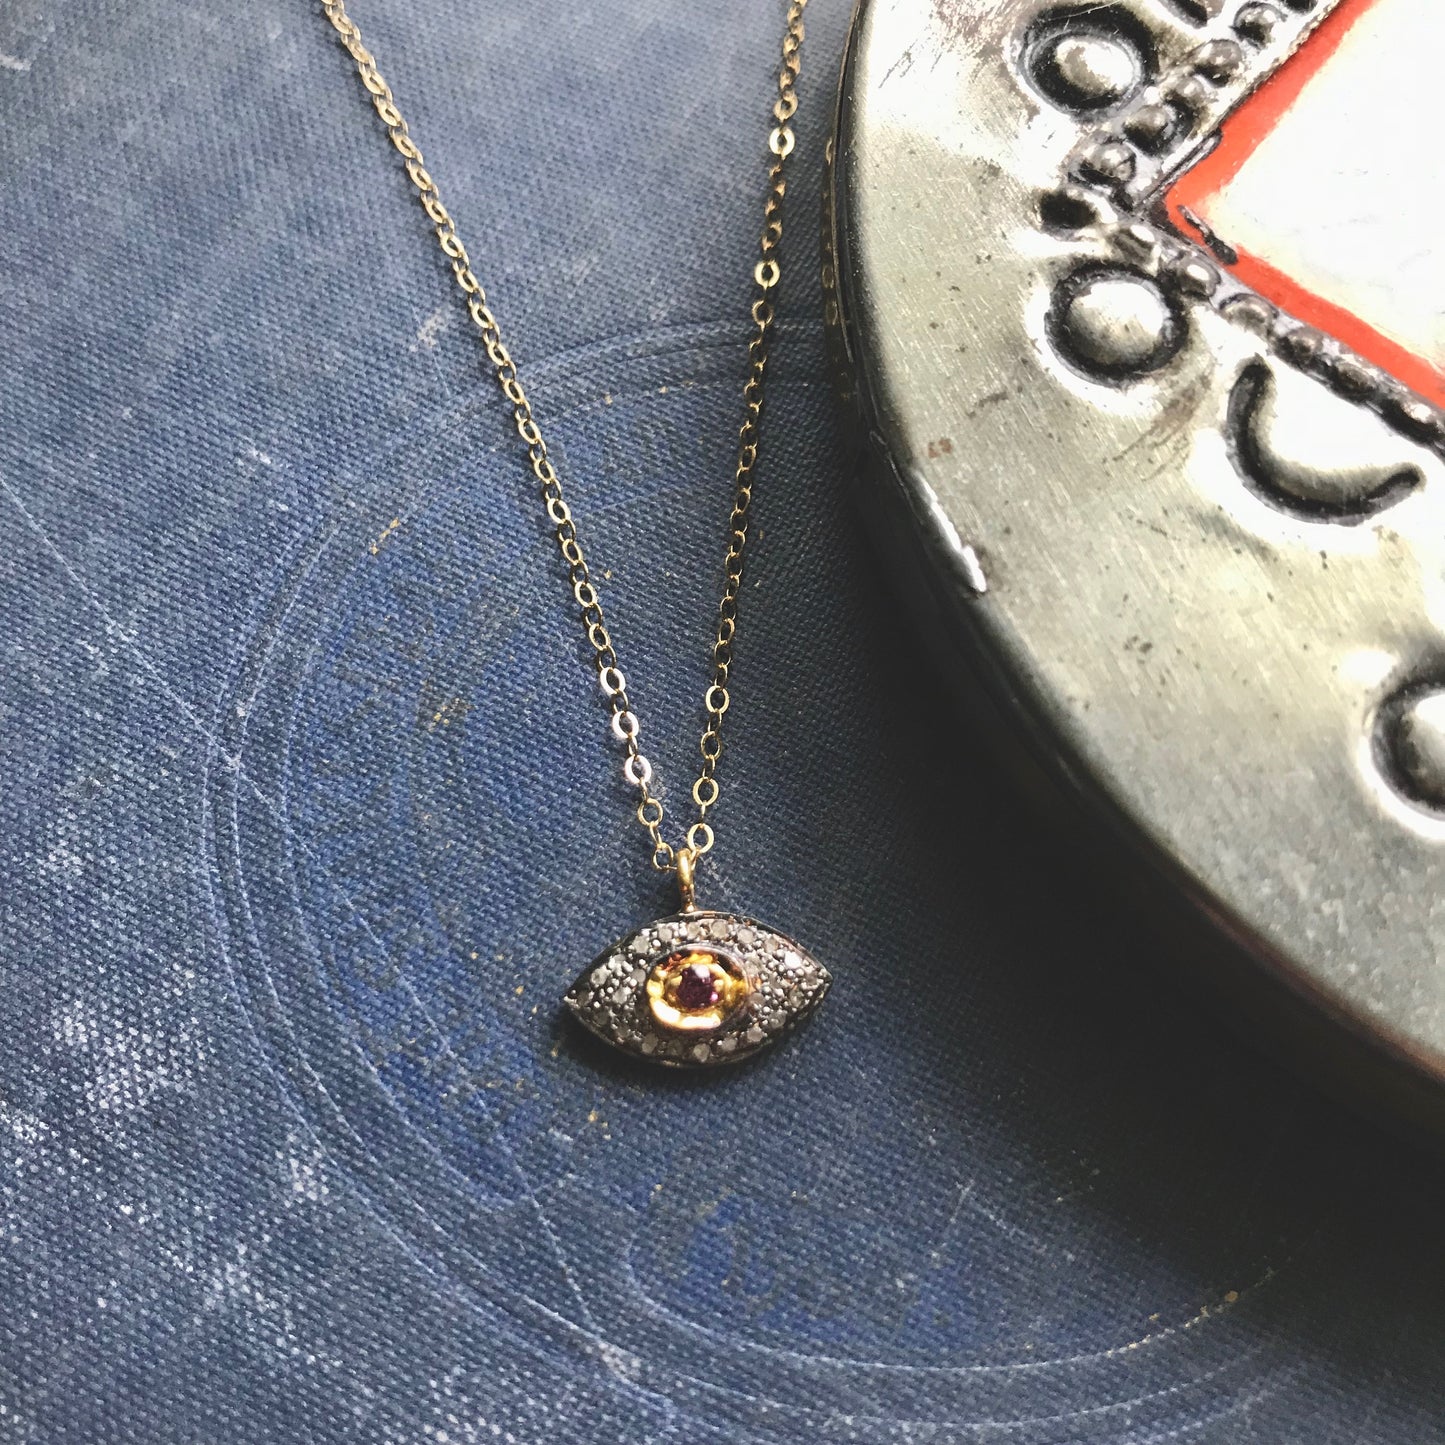 The Omni Pave Diamond Evil Eye Necklace